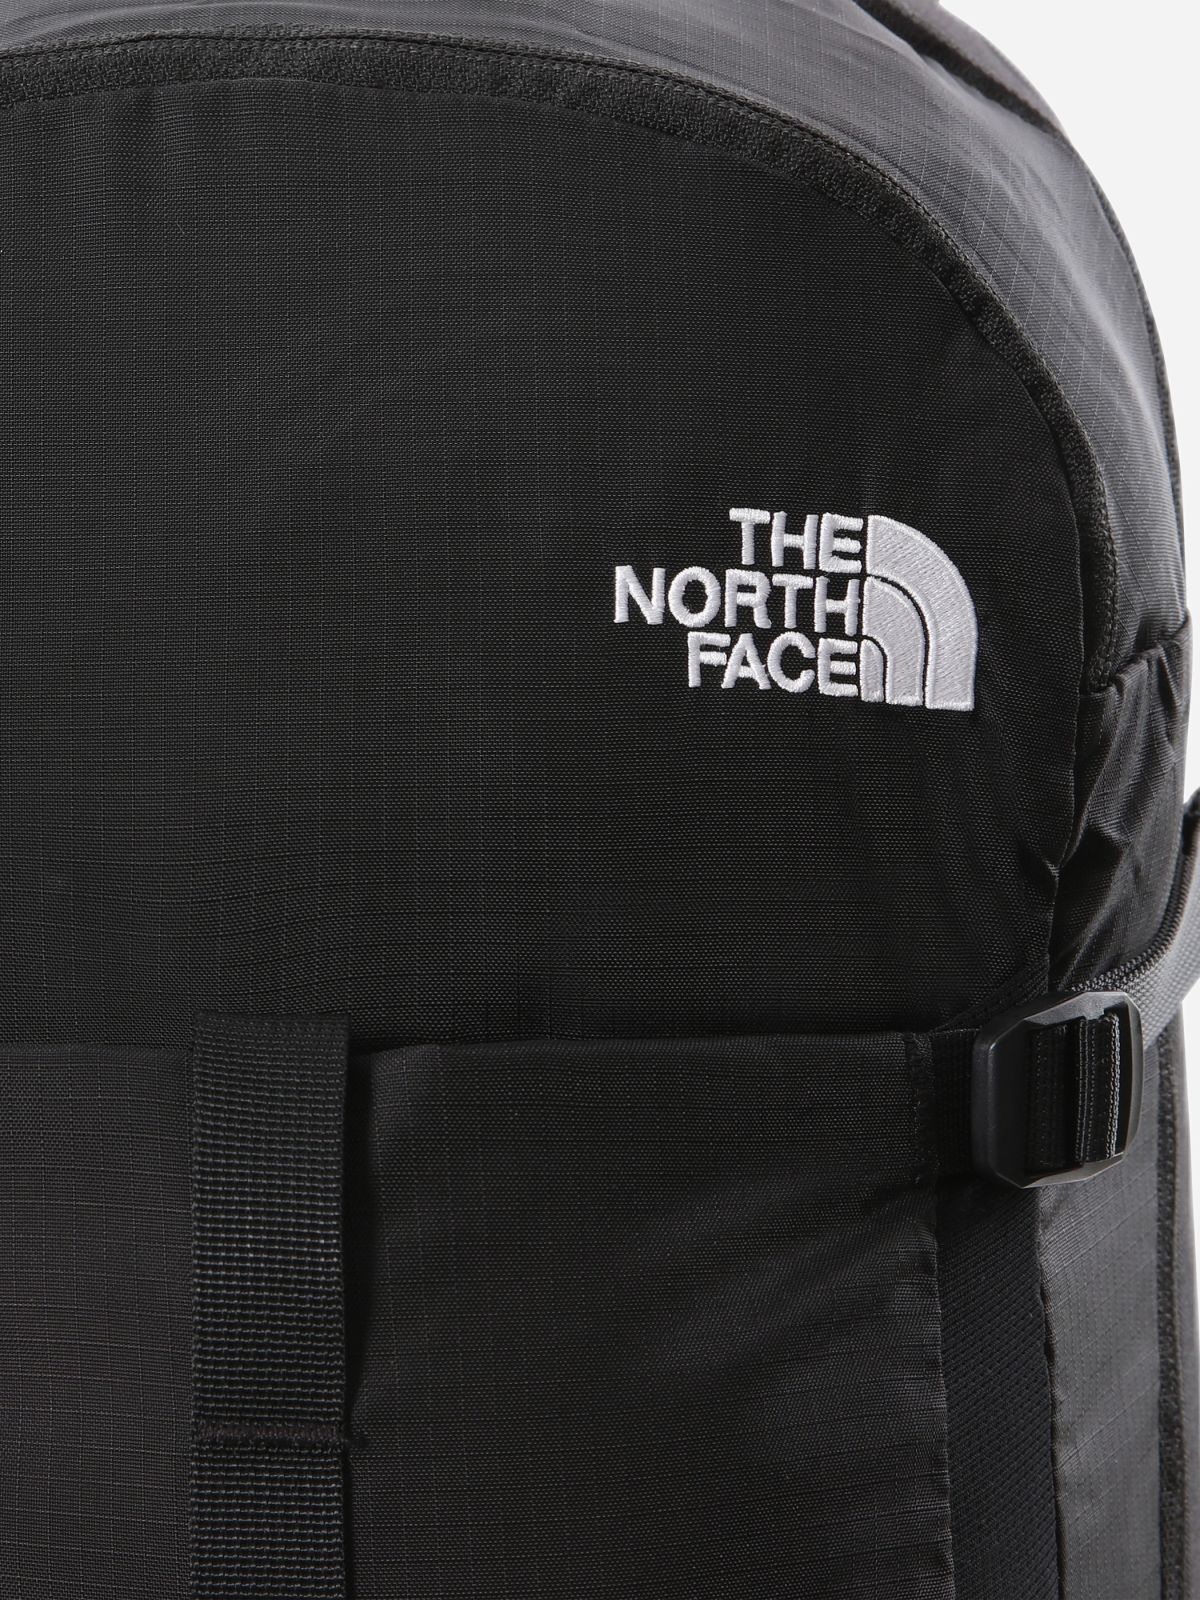  תיק גב עם לוגו / גברים של THE NORTH FACE